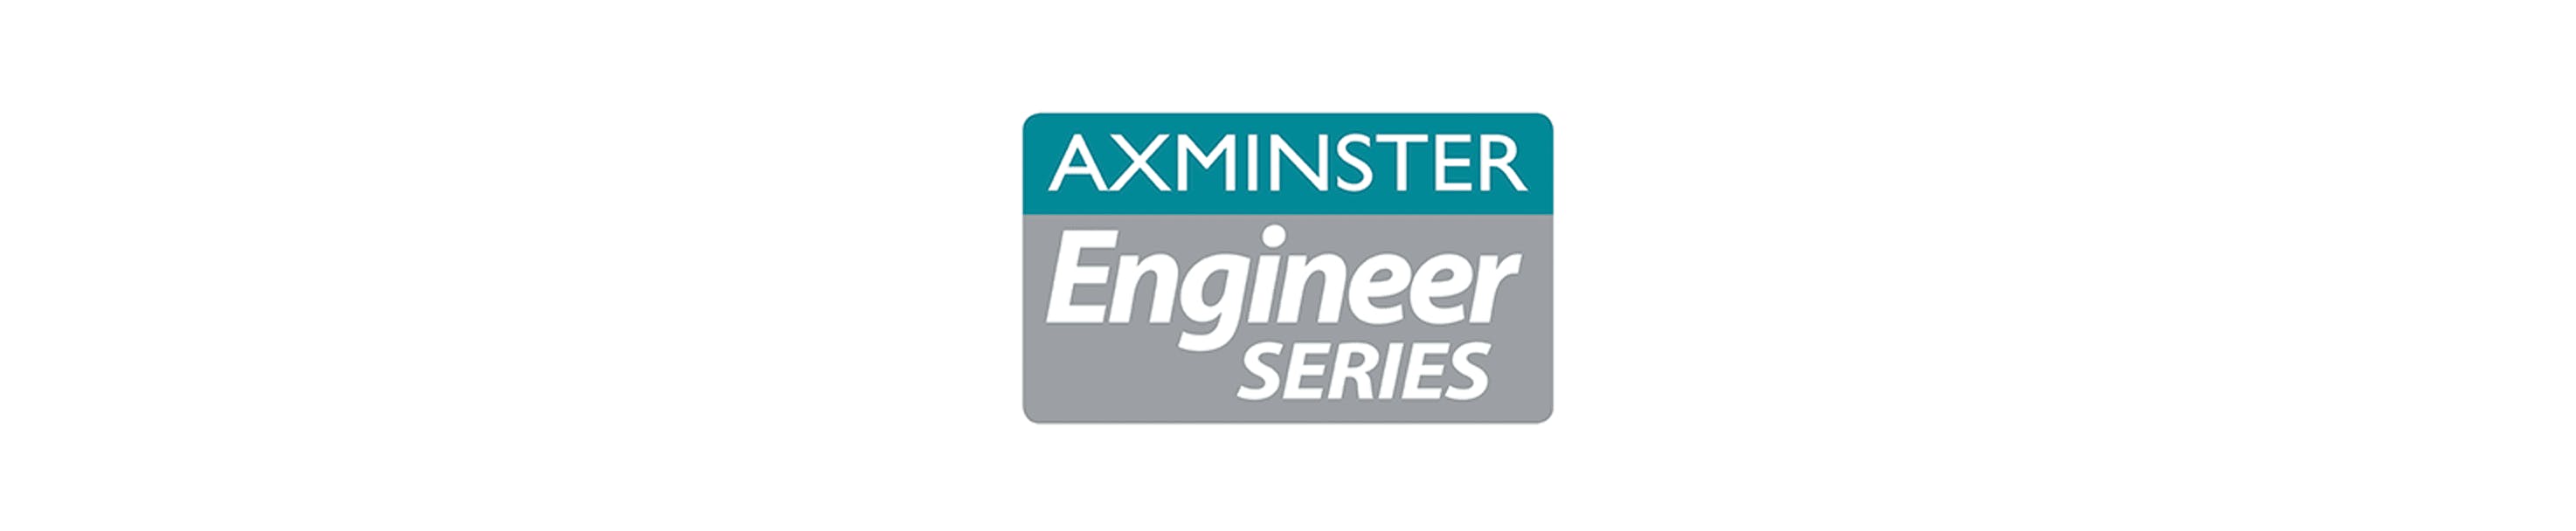 Axminster Engineering